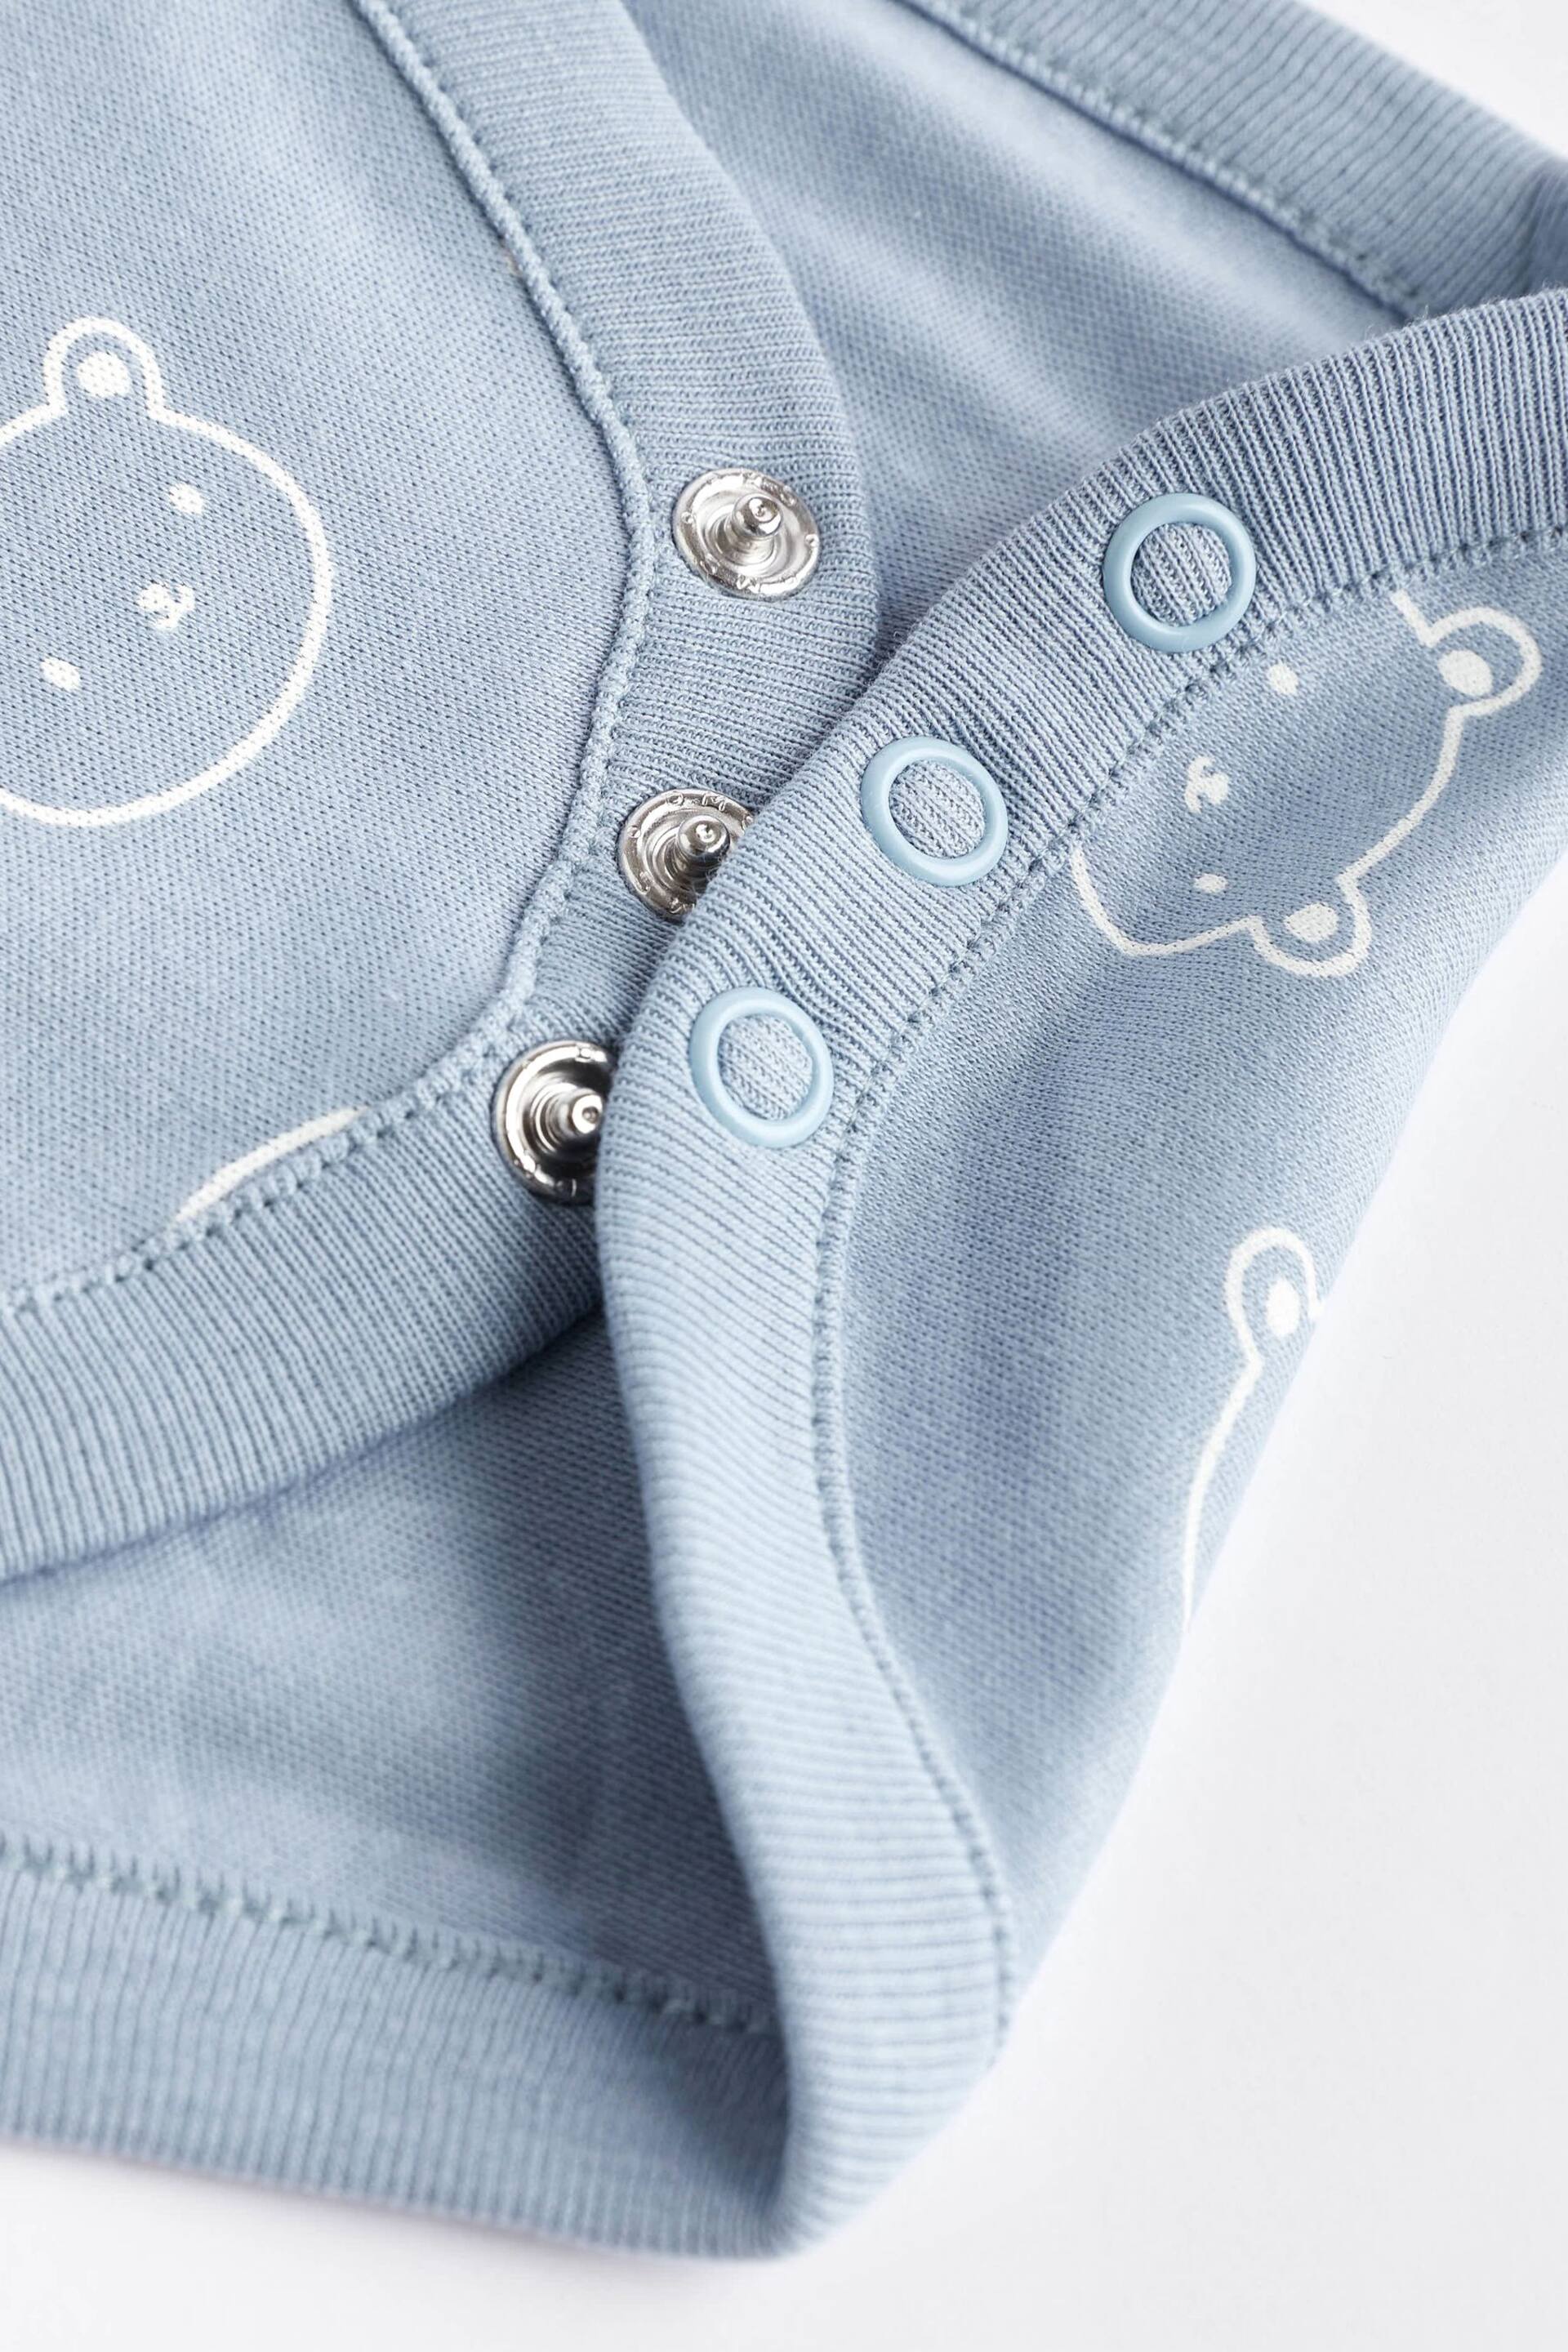 Blue Bear Baby Short Sleeve Bodysuit 4 Pack - Image 6 of 6